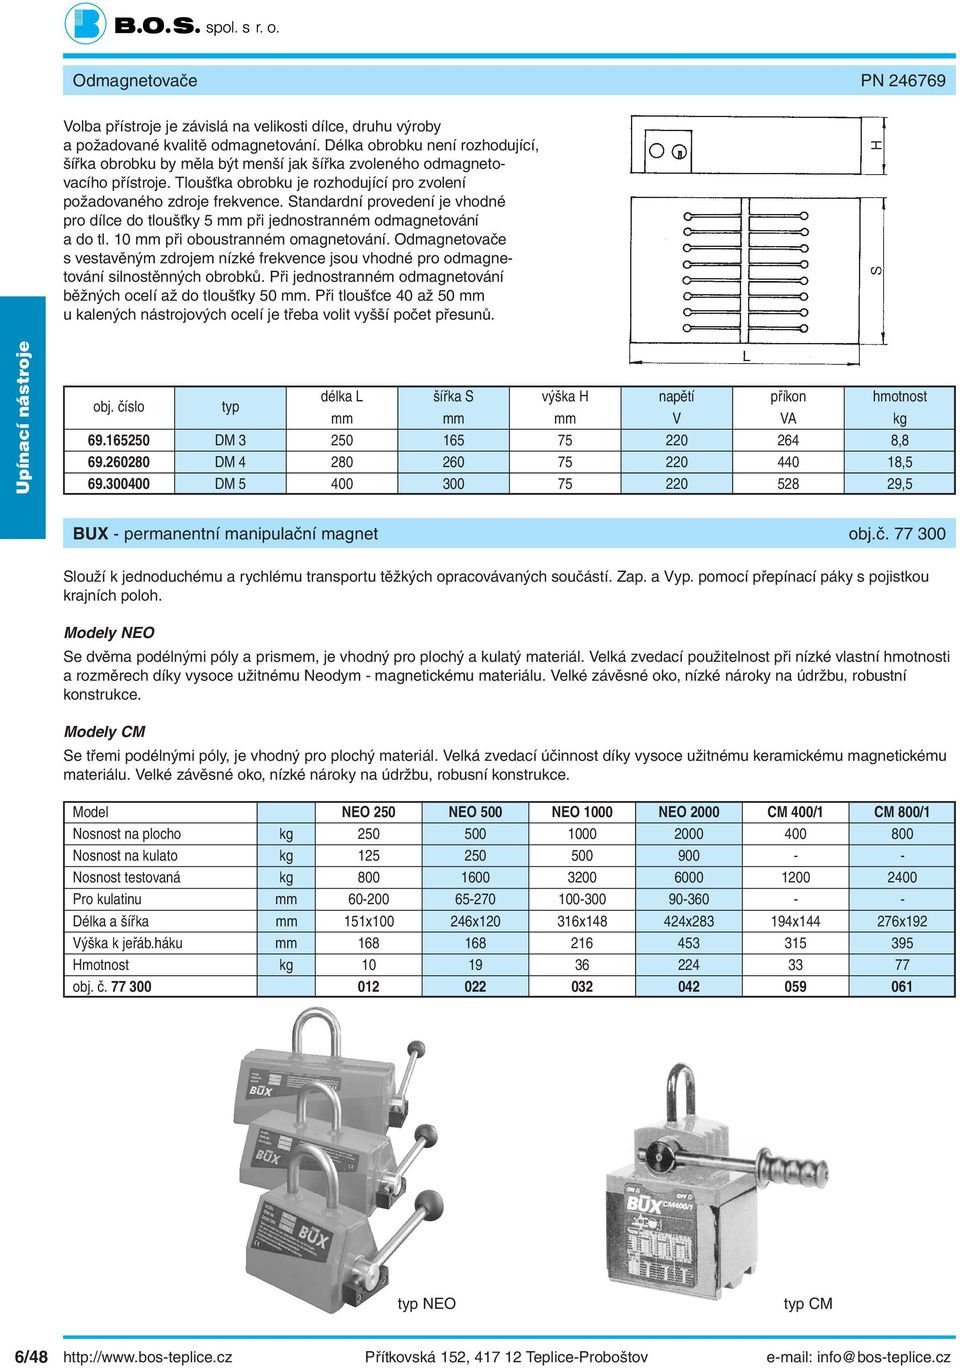 Standardní provedení je vhodné pro dílce do tloušťky 5 mm při jednostranném odmagnetování a do tl. 10 mm při oboustranném omagnetování.